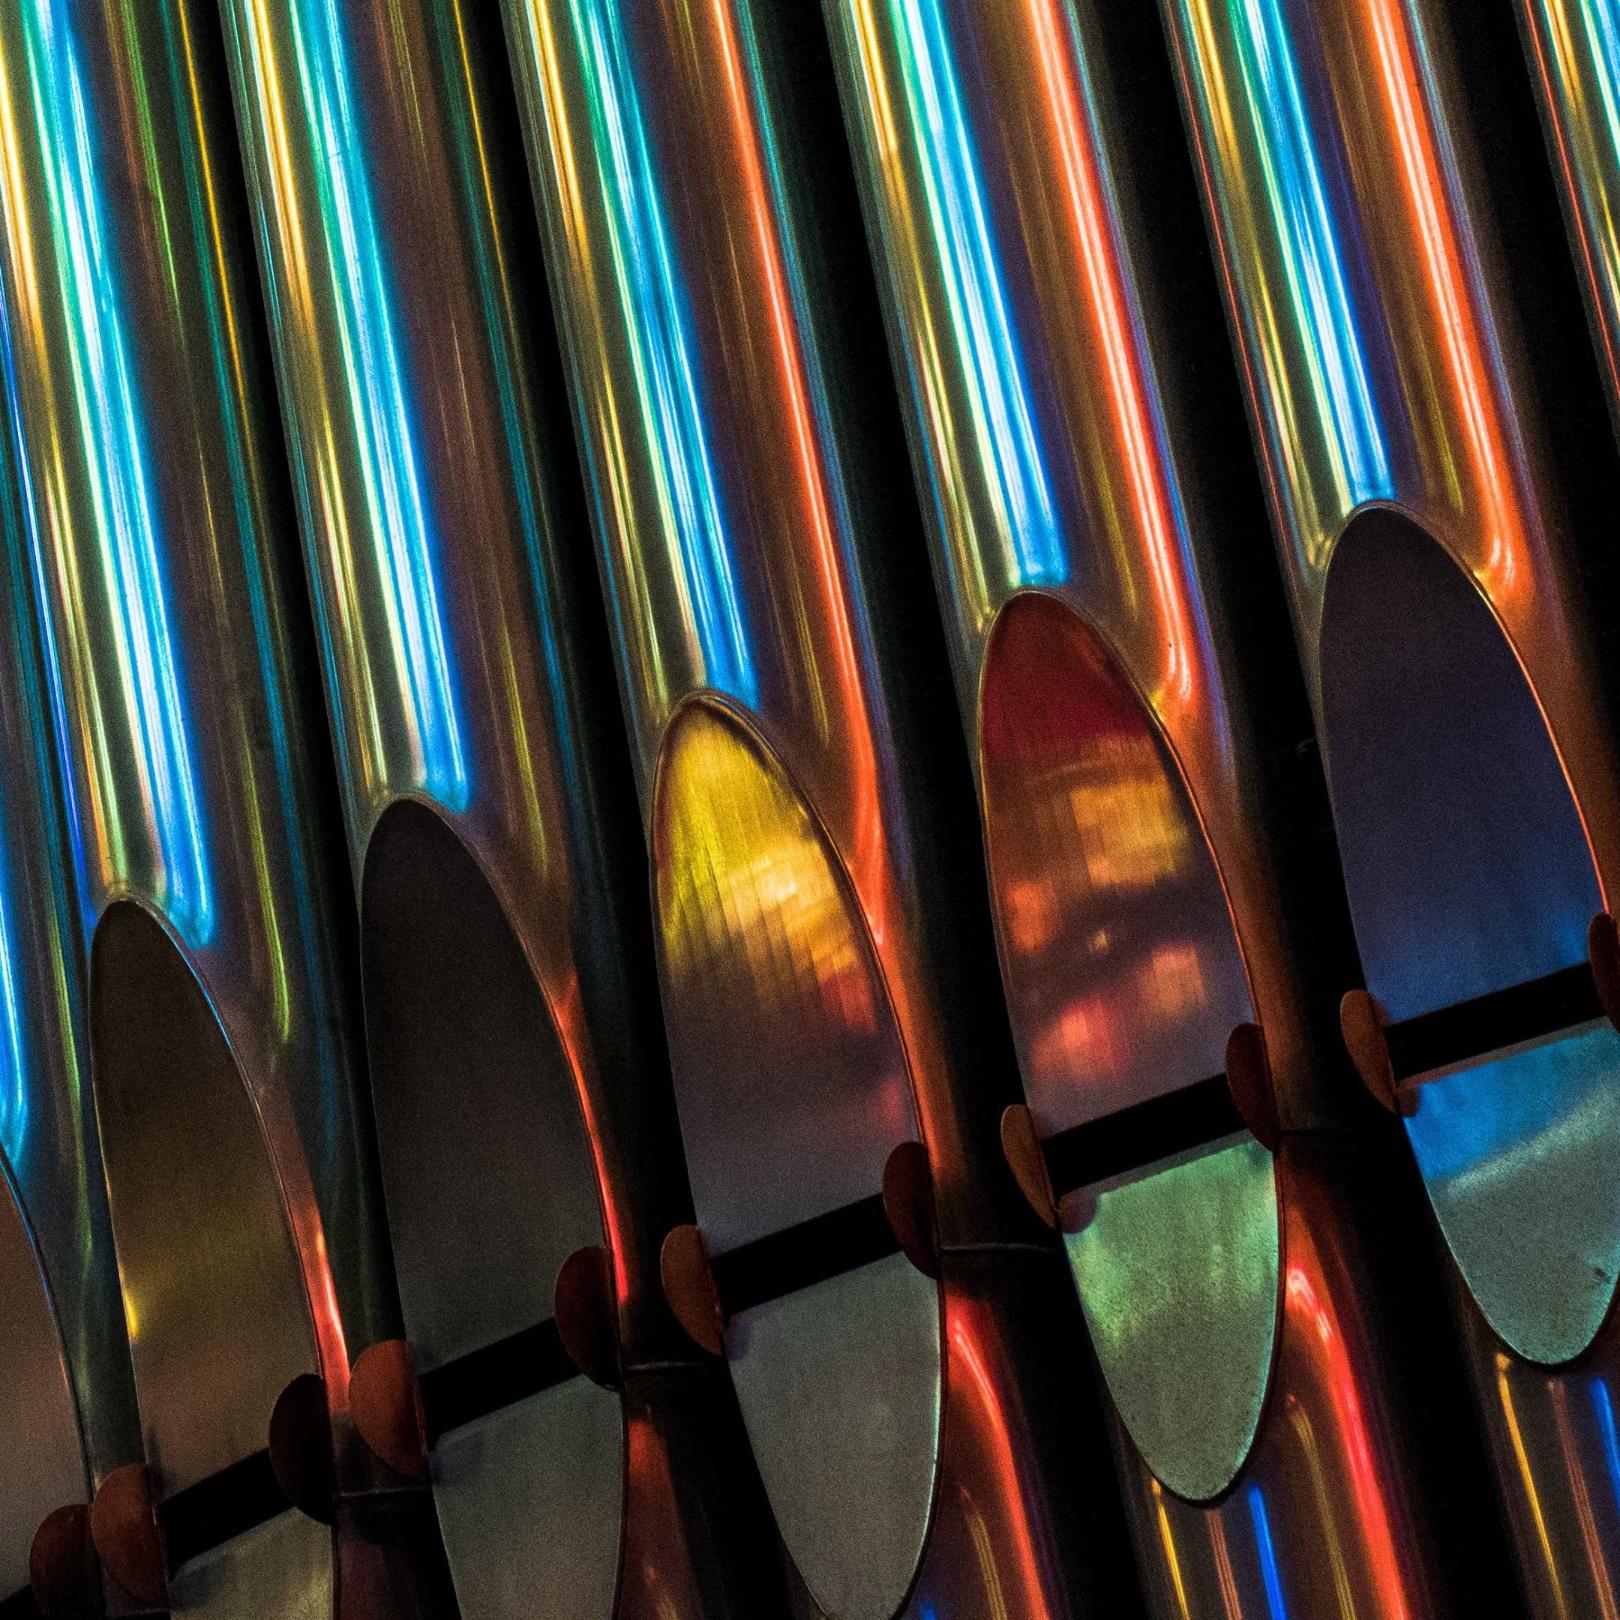 Lichtspiegelungen auf Orgelpfeifen 1x1 (c) pcamaro / Pixabay.com